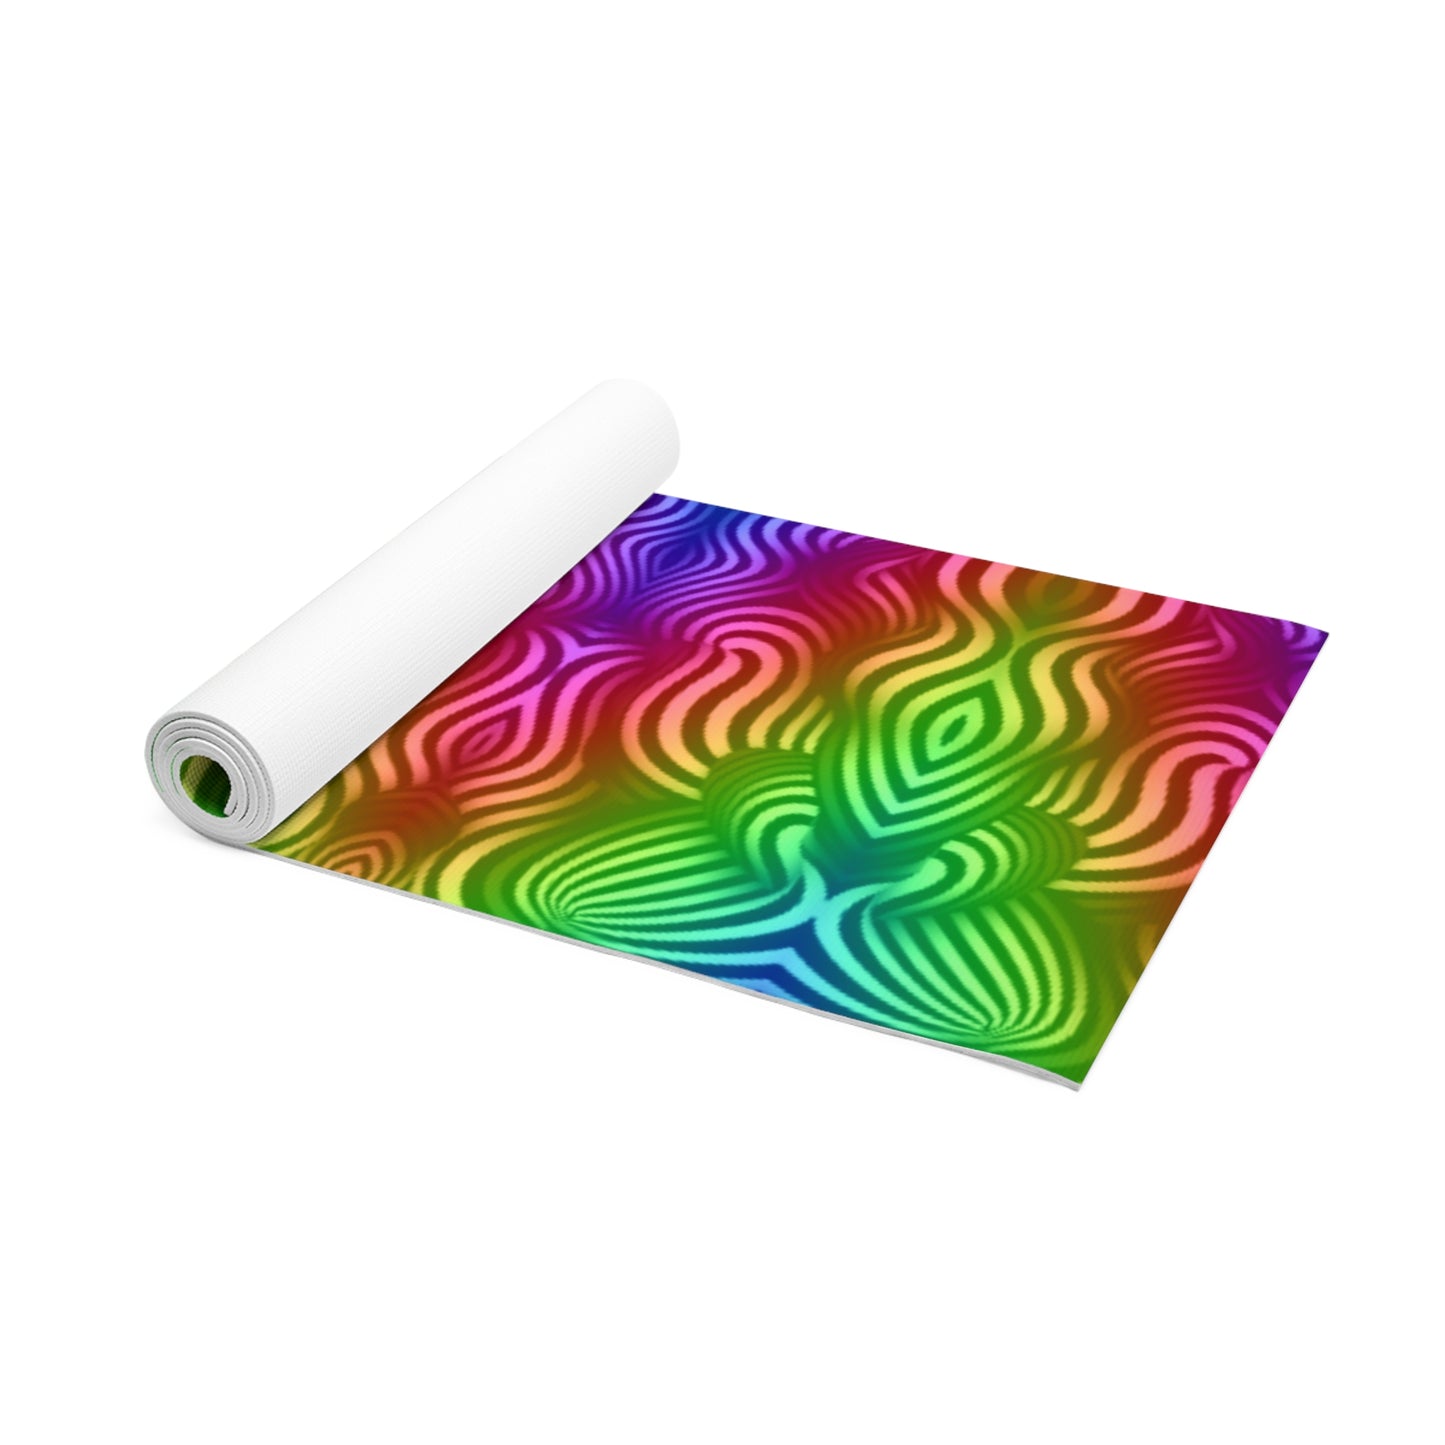 Rainbow Swimmers - Foam Yoga Mat